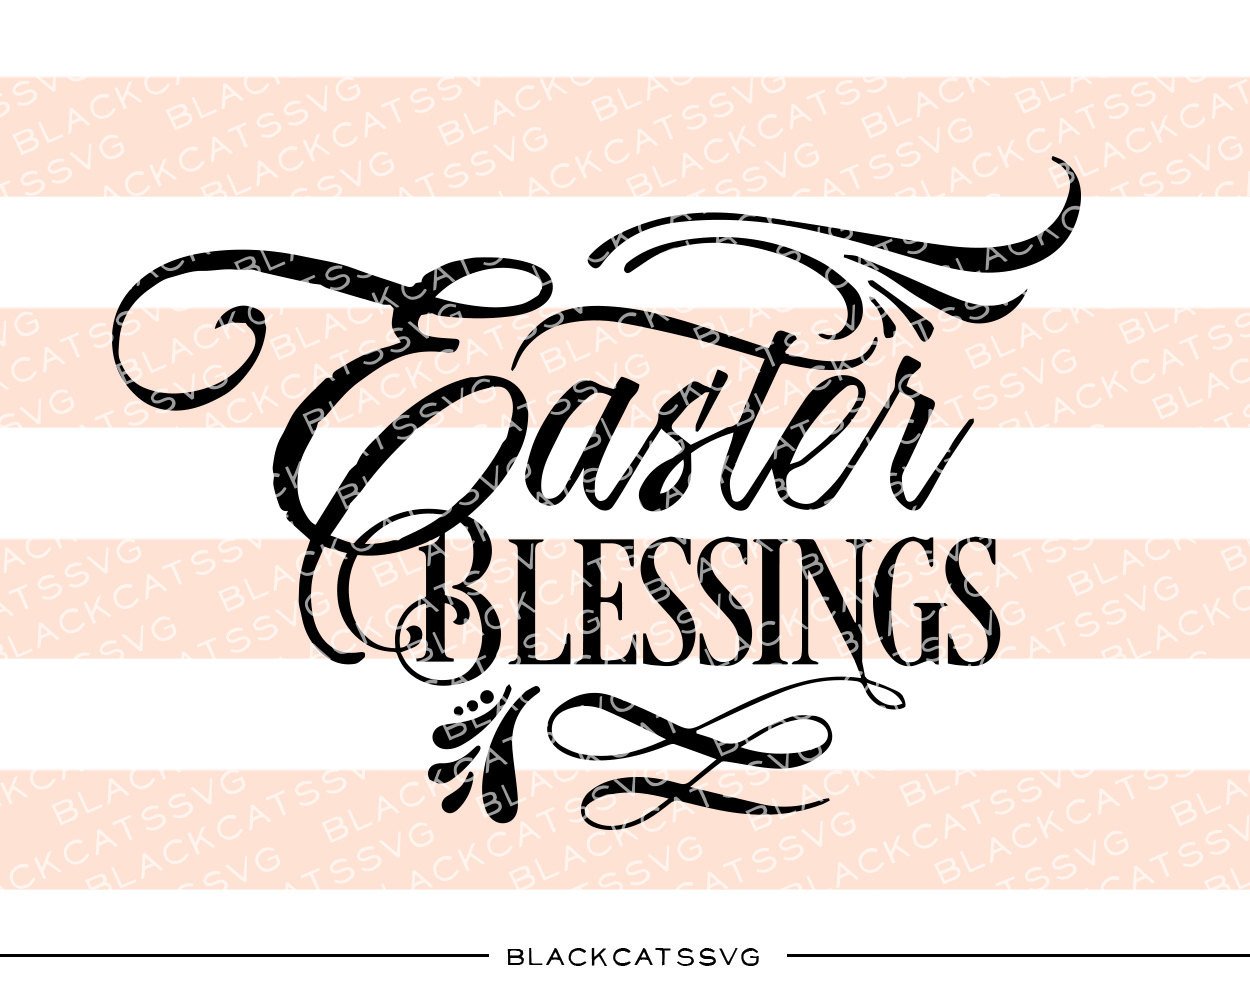 Easter Blessings.